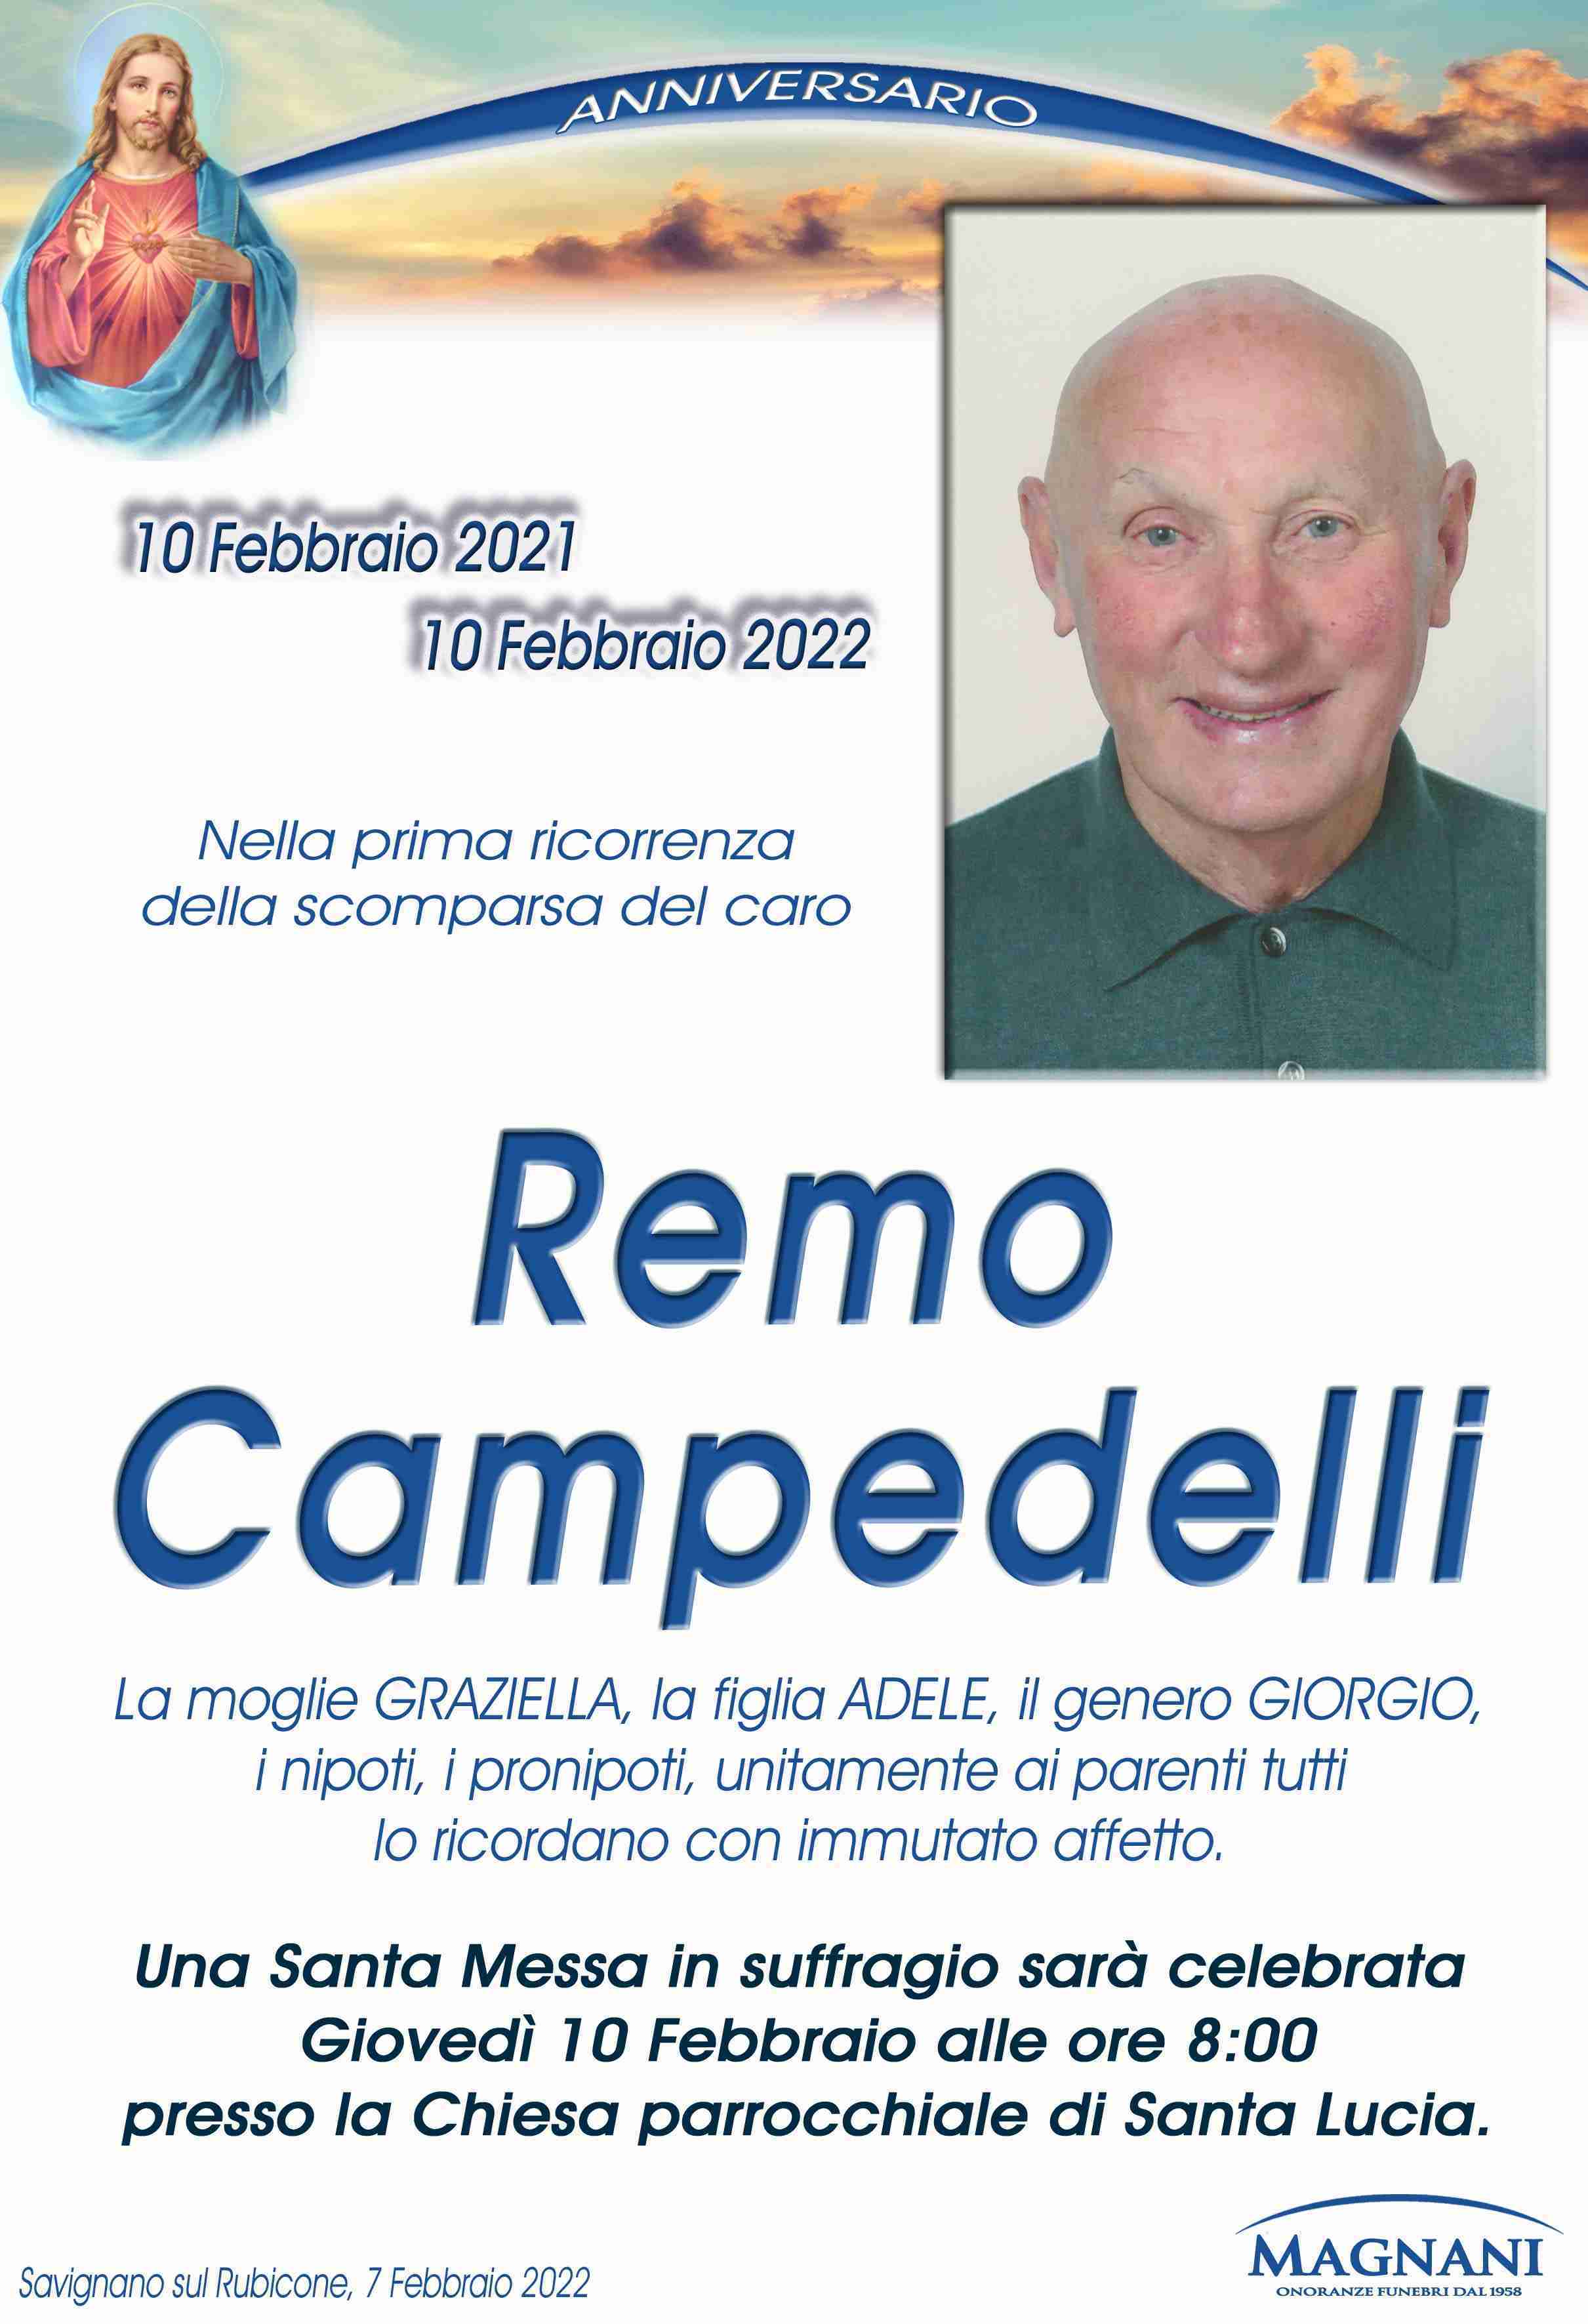 Remo Campedelli